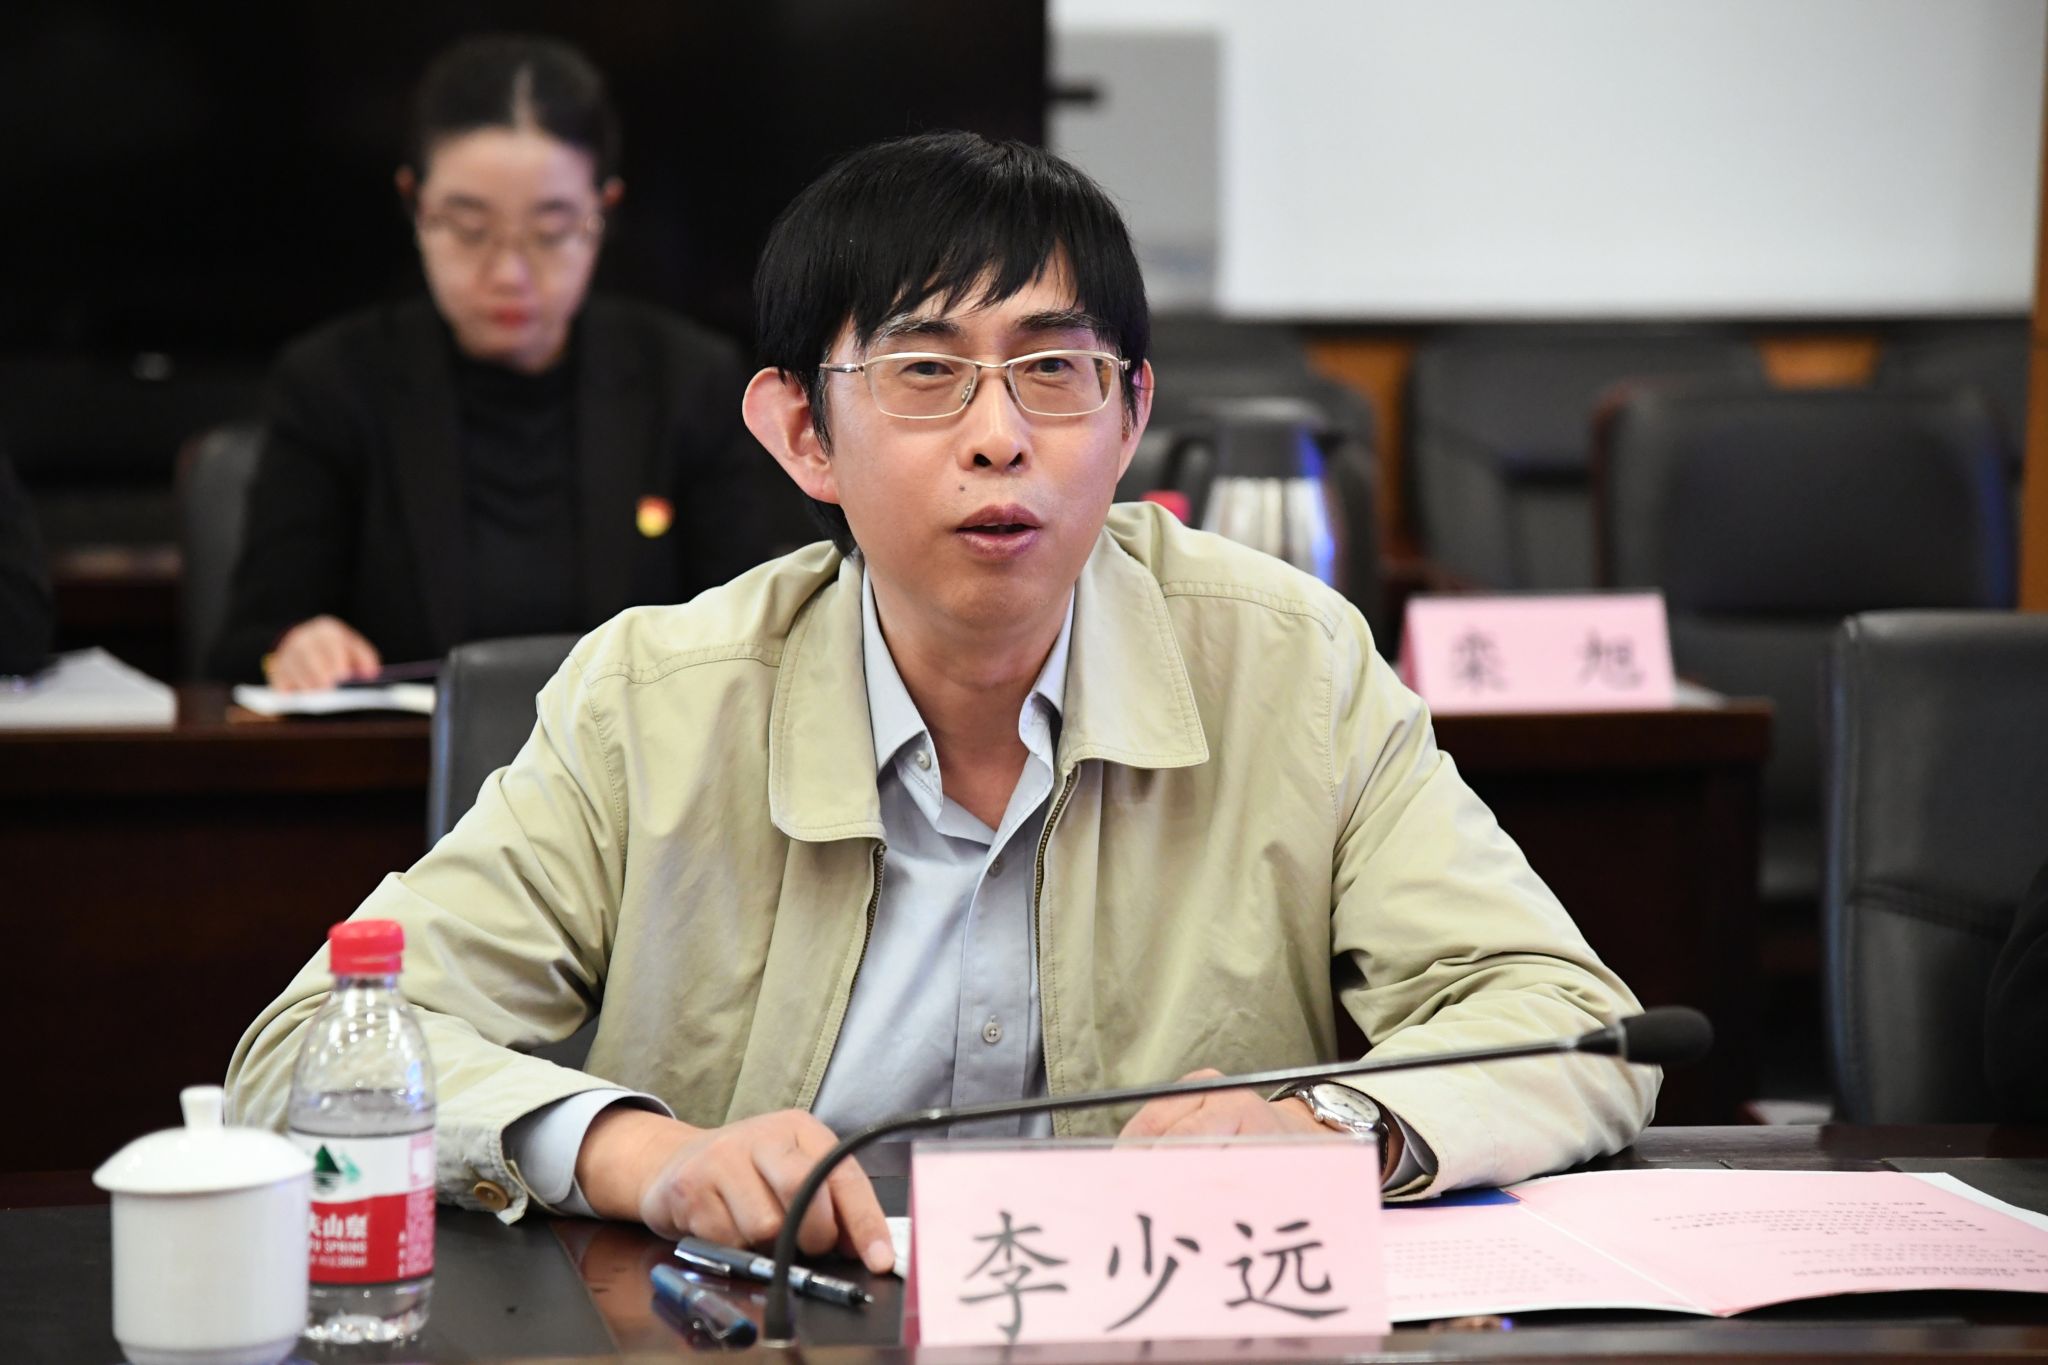 president delegation visit qingdao university